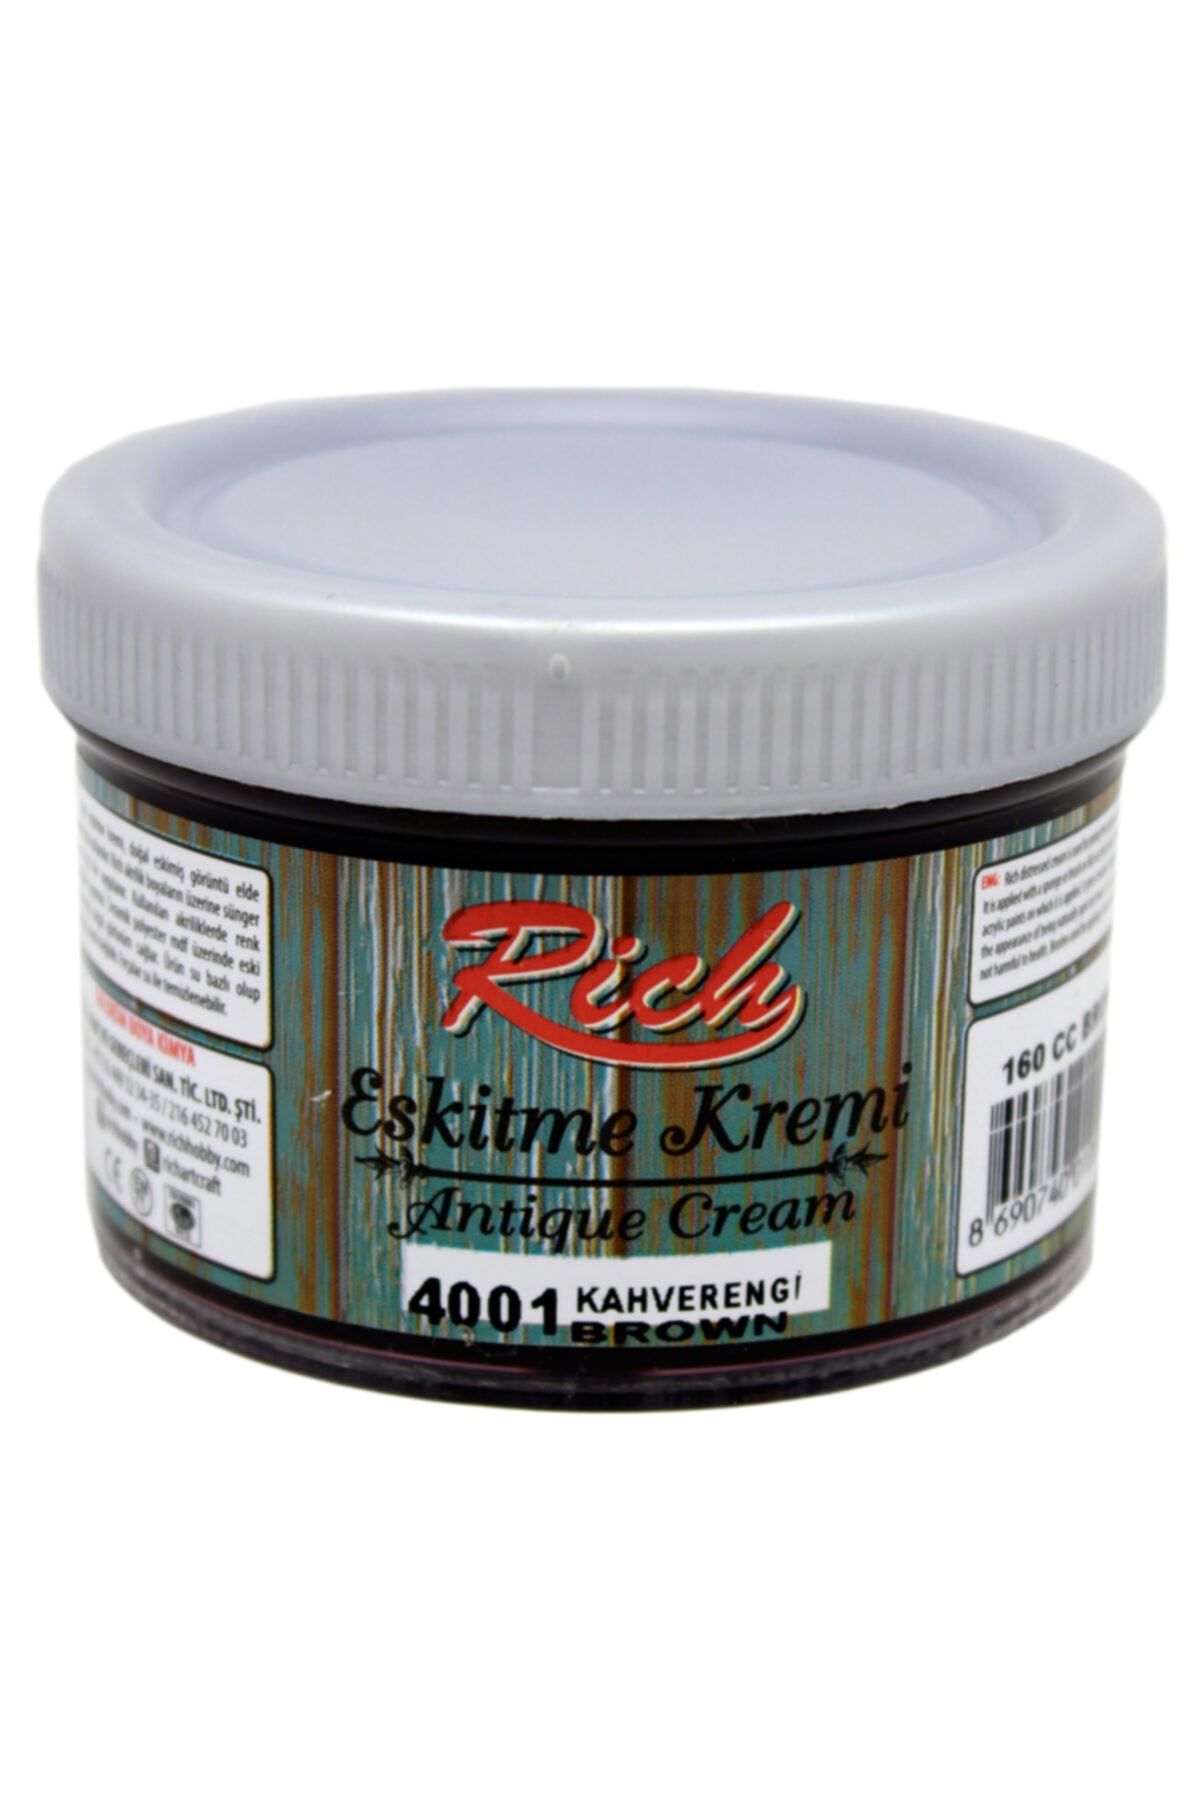 Rich Eskitme Kremi 4001 Kahverengi 150 Cc Antique Cream